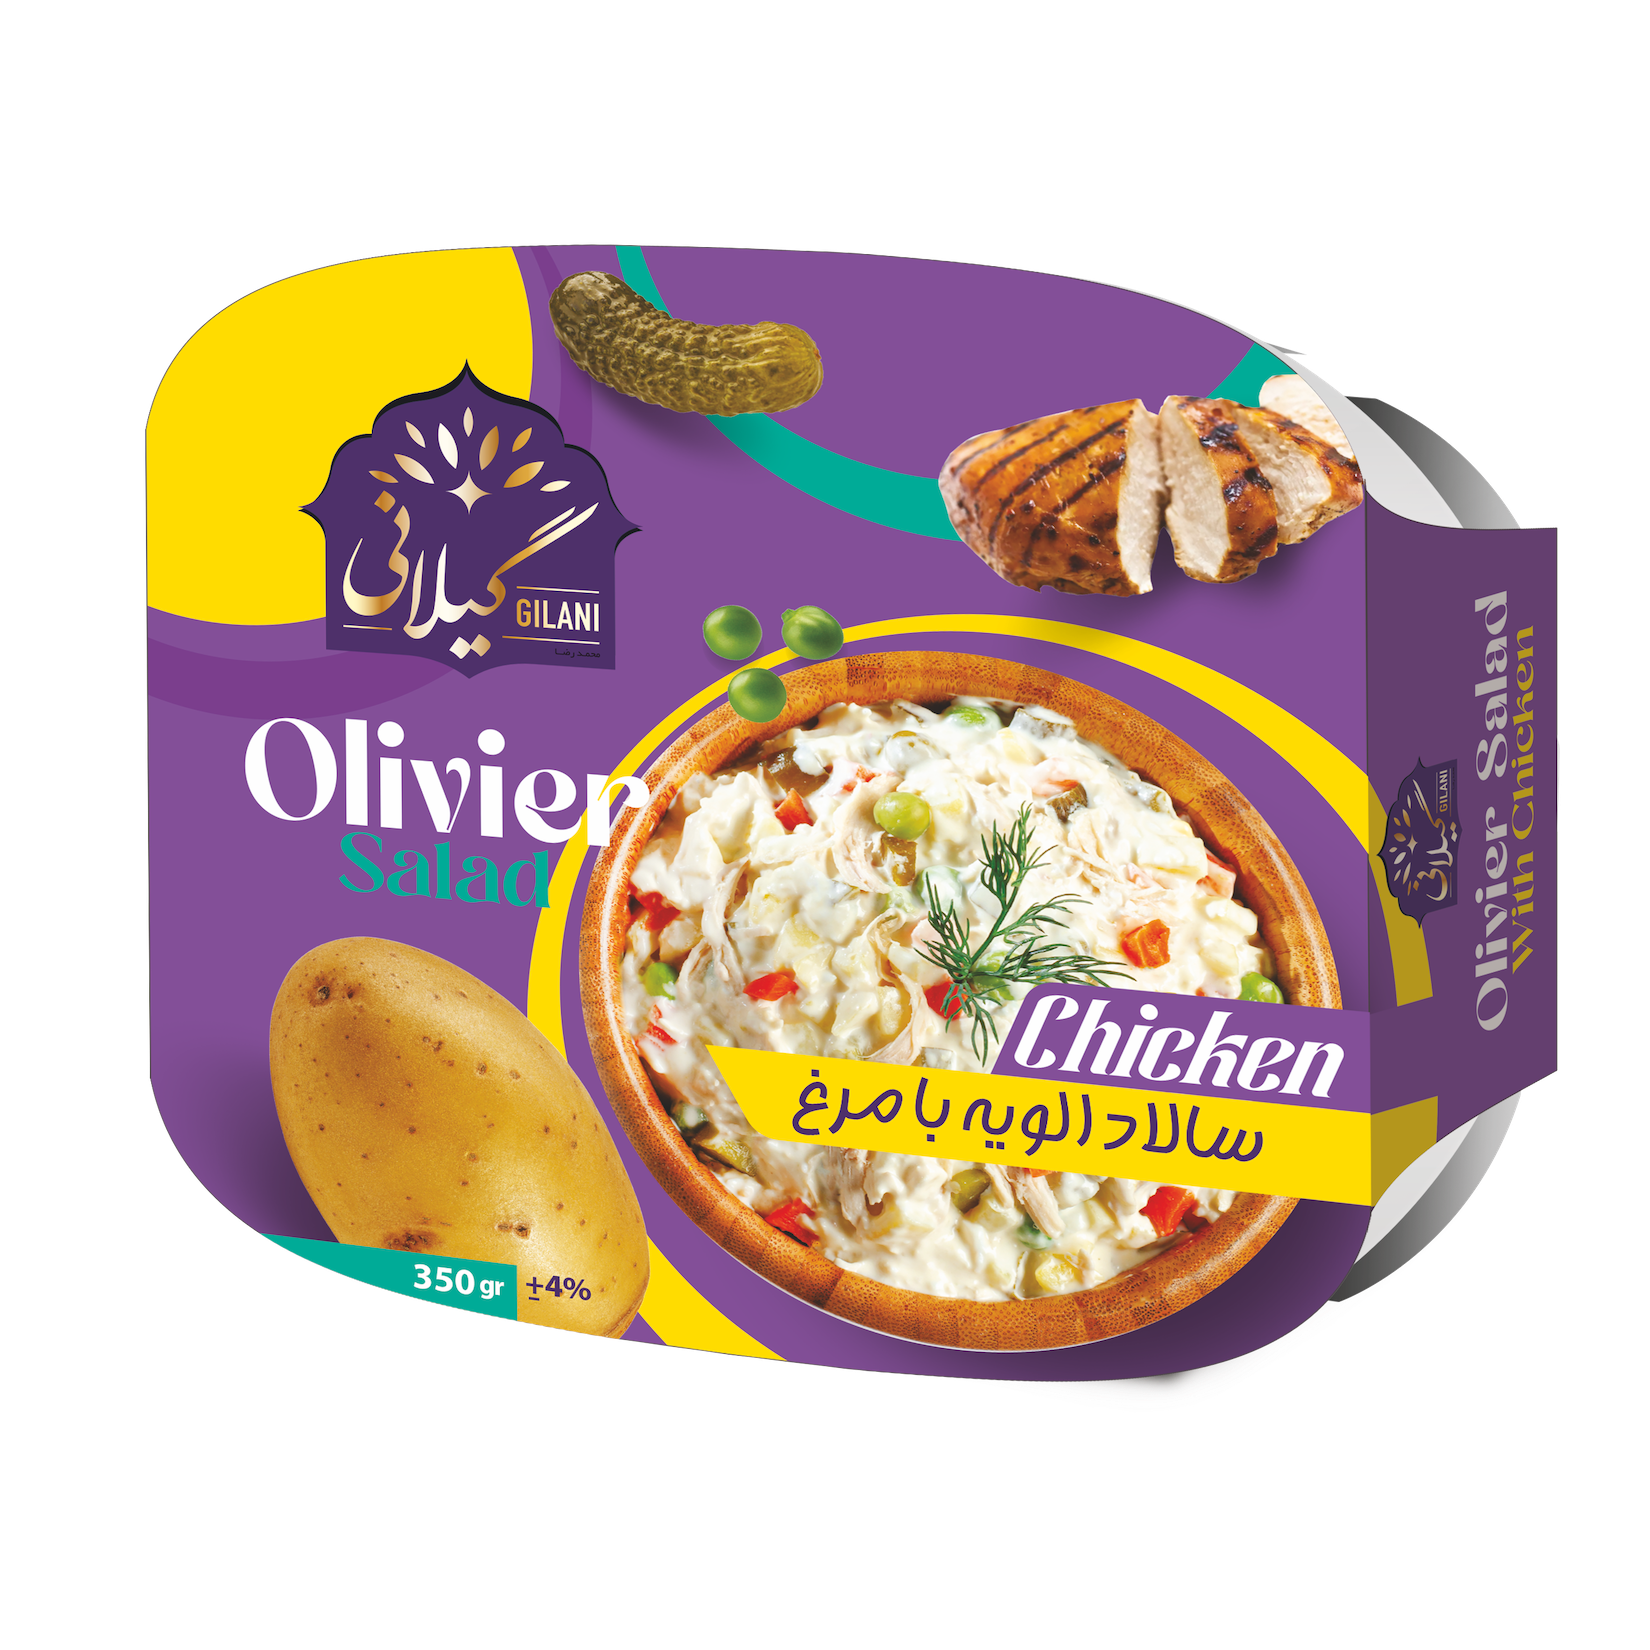 Olivier Salad with chicken